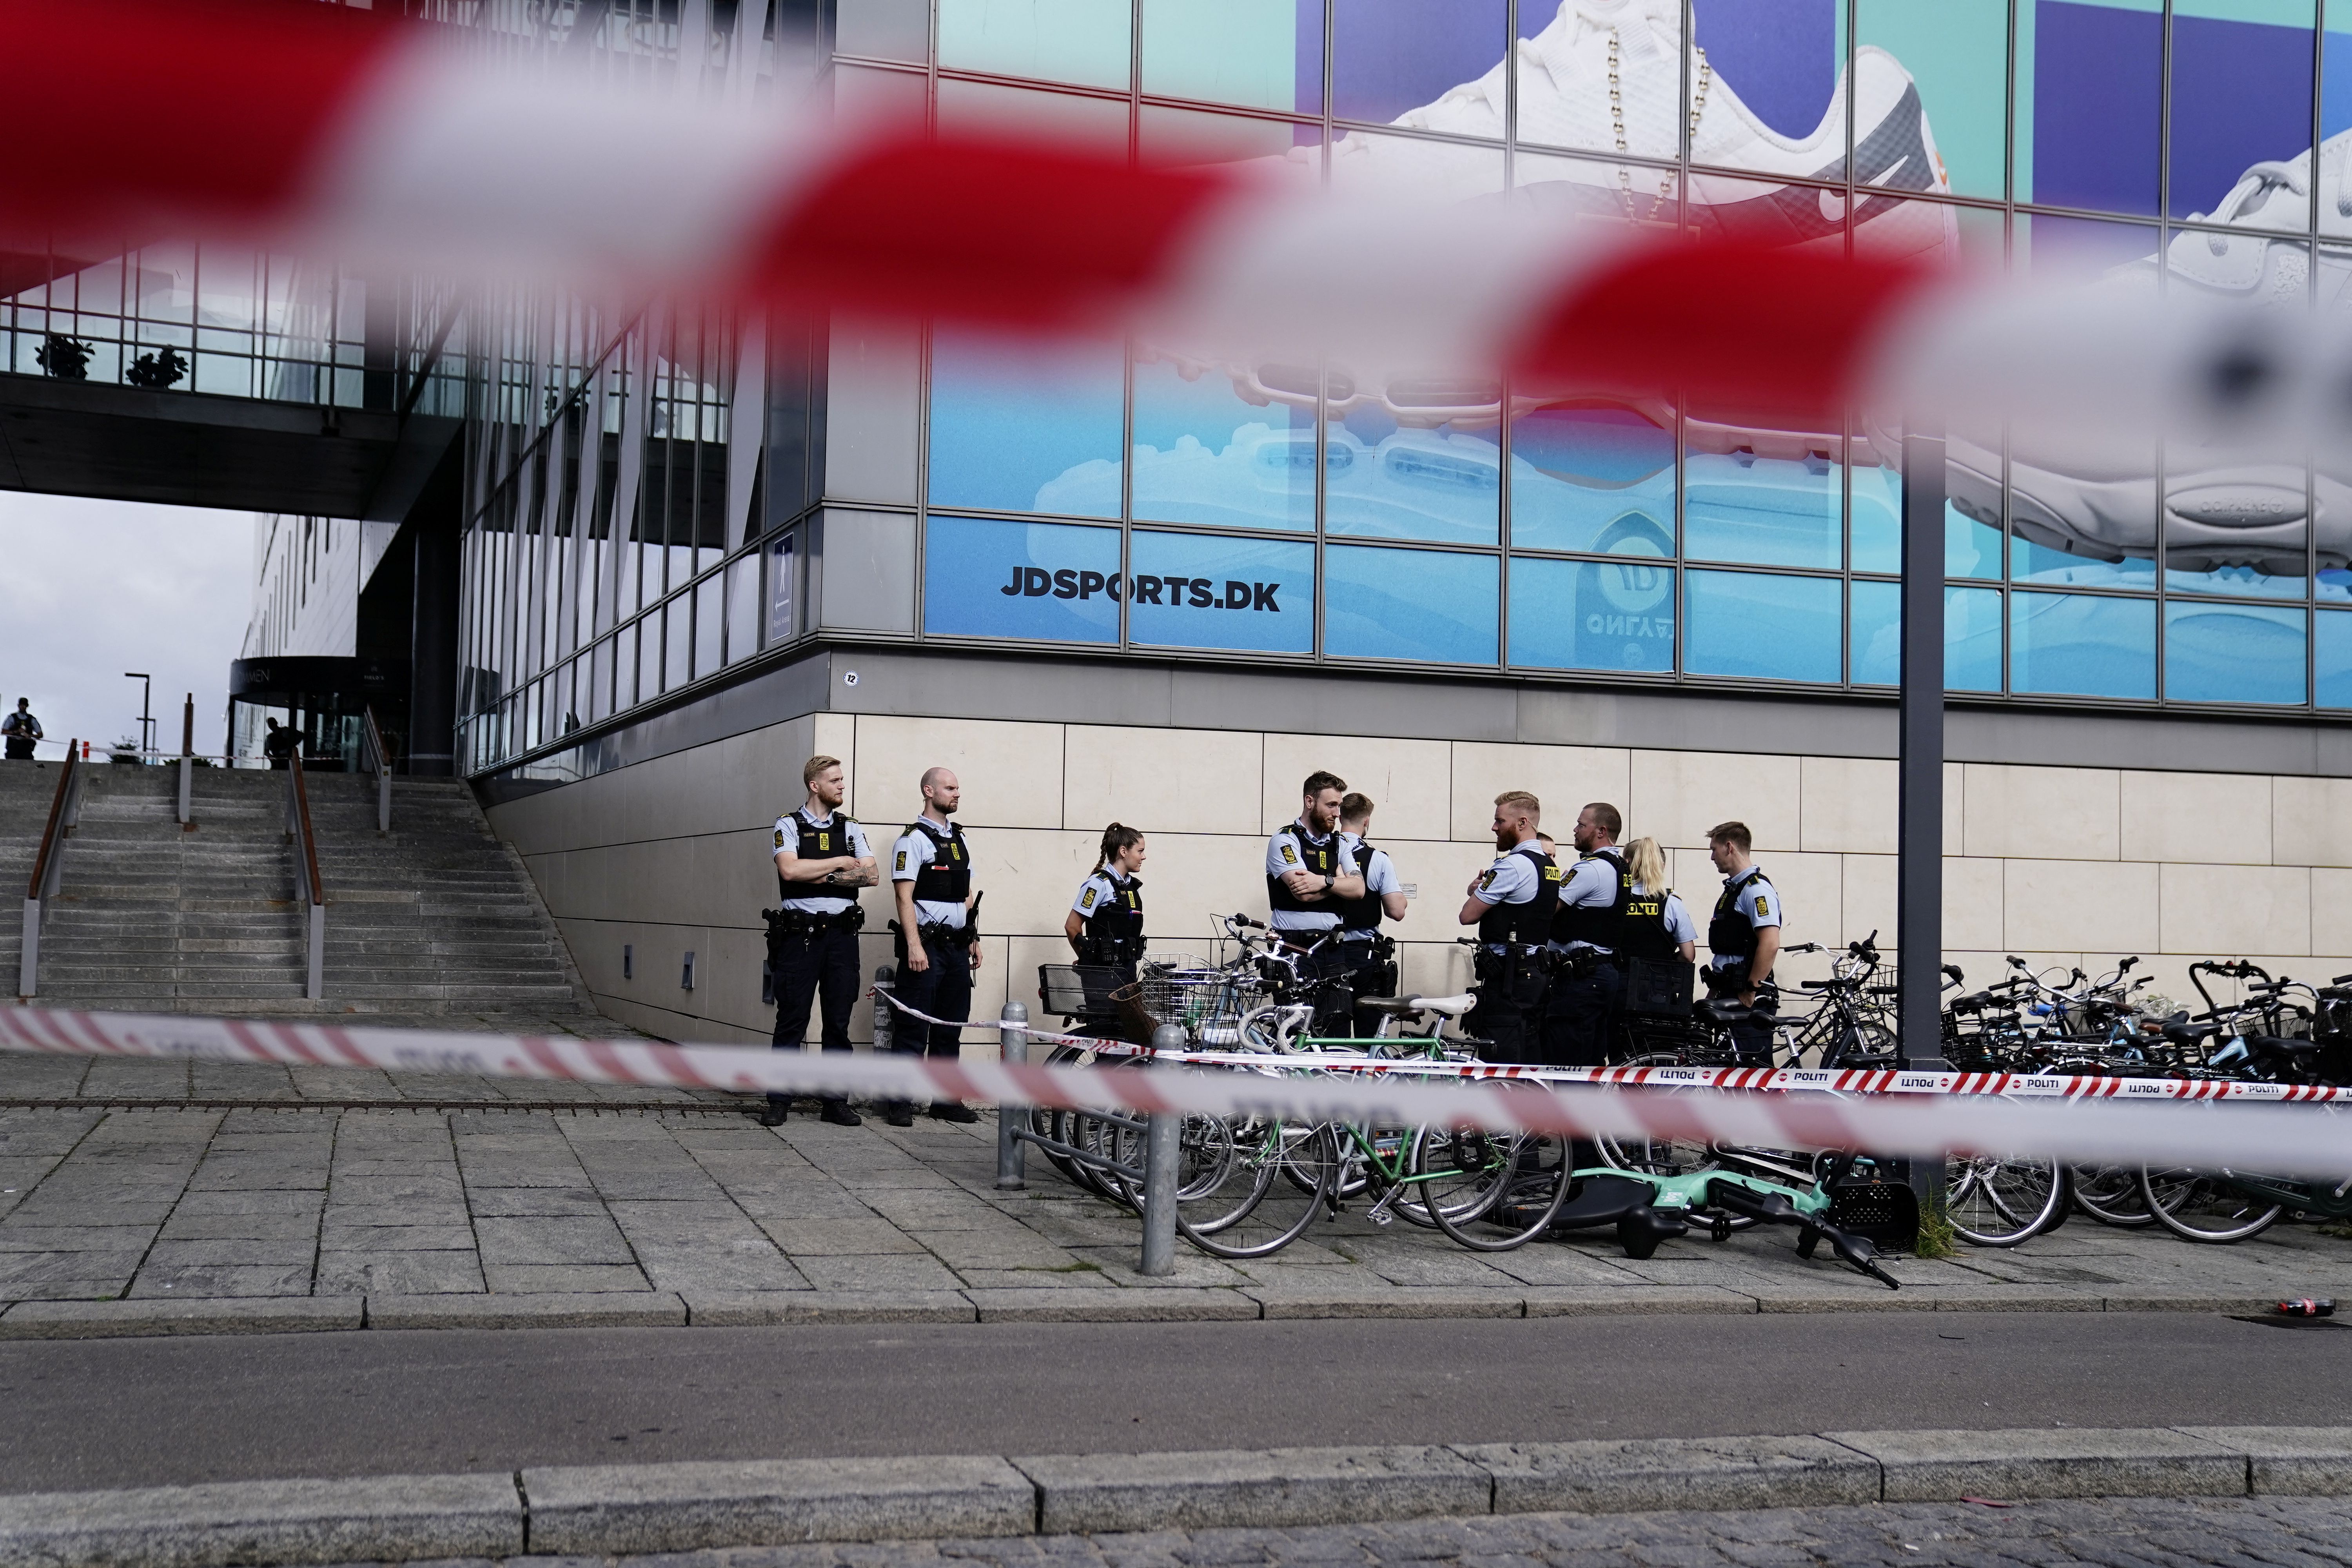 Dimanche 3 juillet, une fusillade a eu lieu dans un centre commercial de Copenhague, au Danemark. Pour...